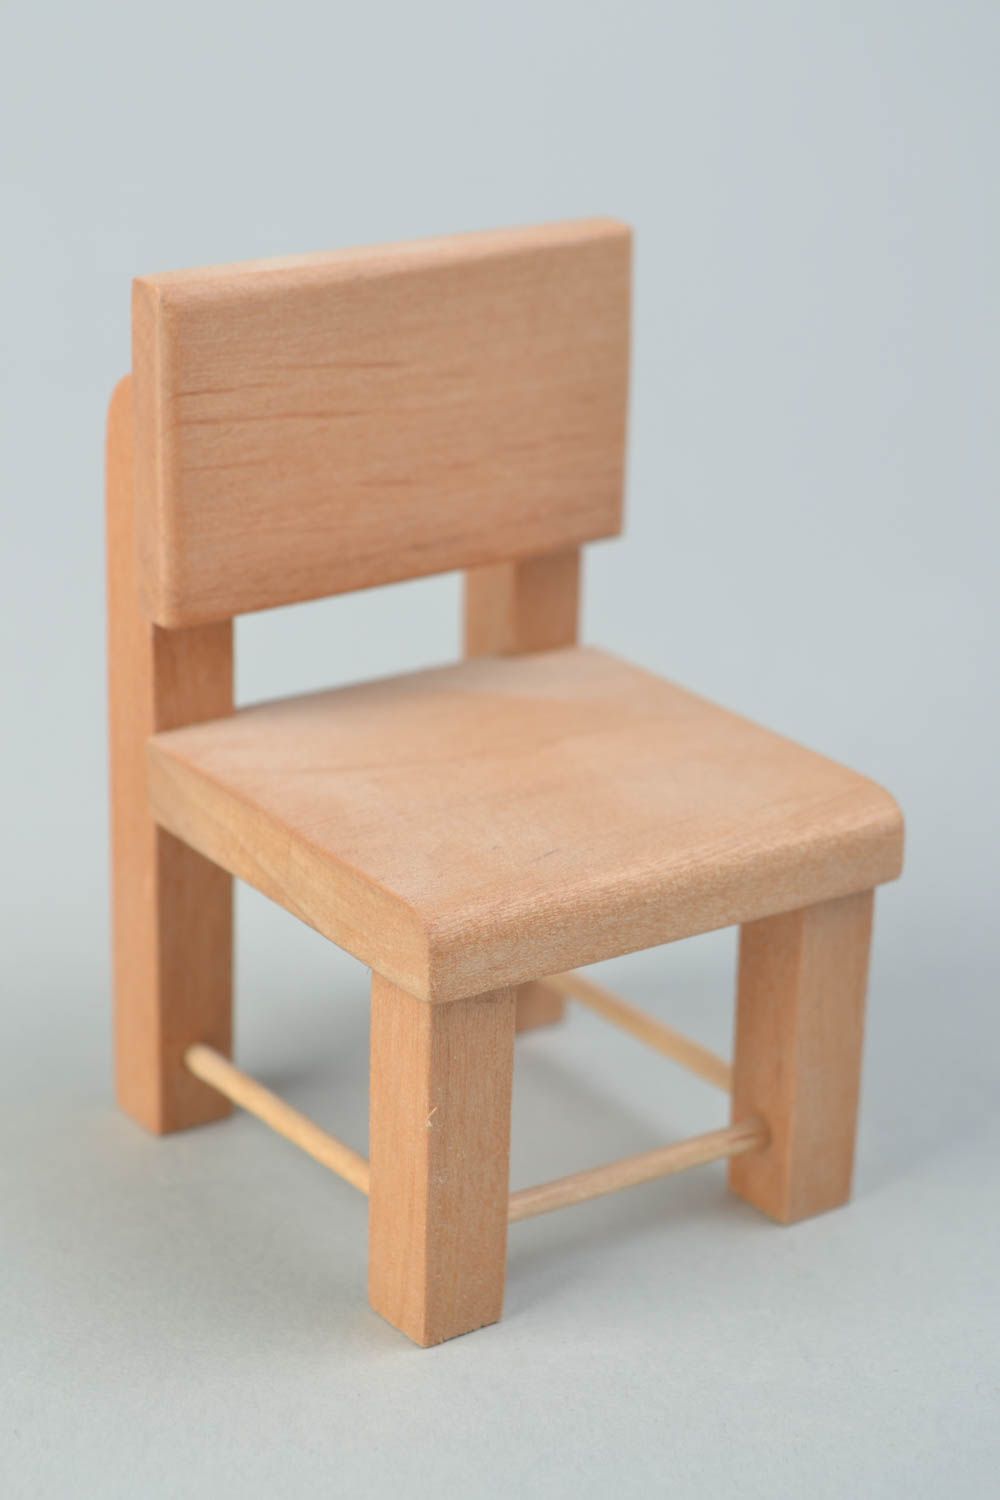 Chaise pour poupée en bois faite main pratique décoration jouet originale photo 1